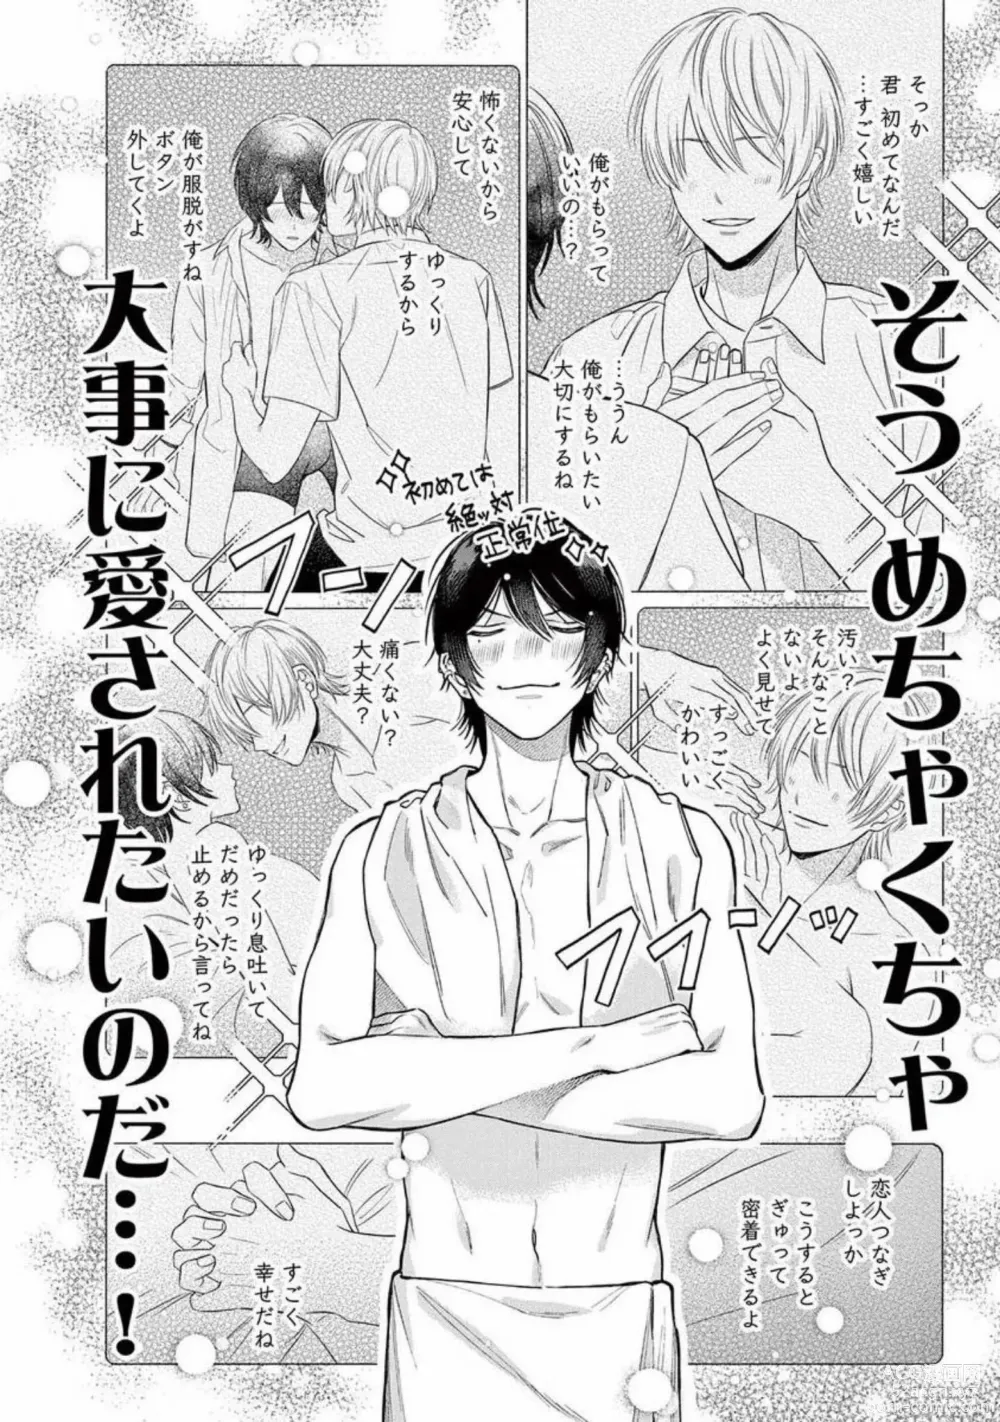 Page 8 of manga Junjou de Nani ga Warui - Whats wrong with being innocent?